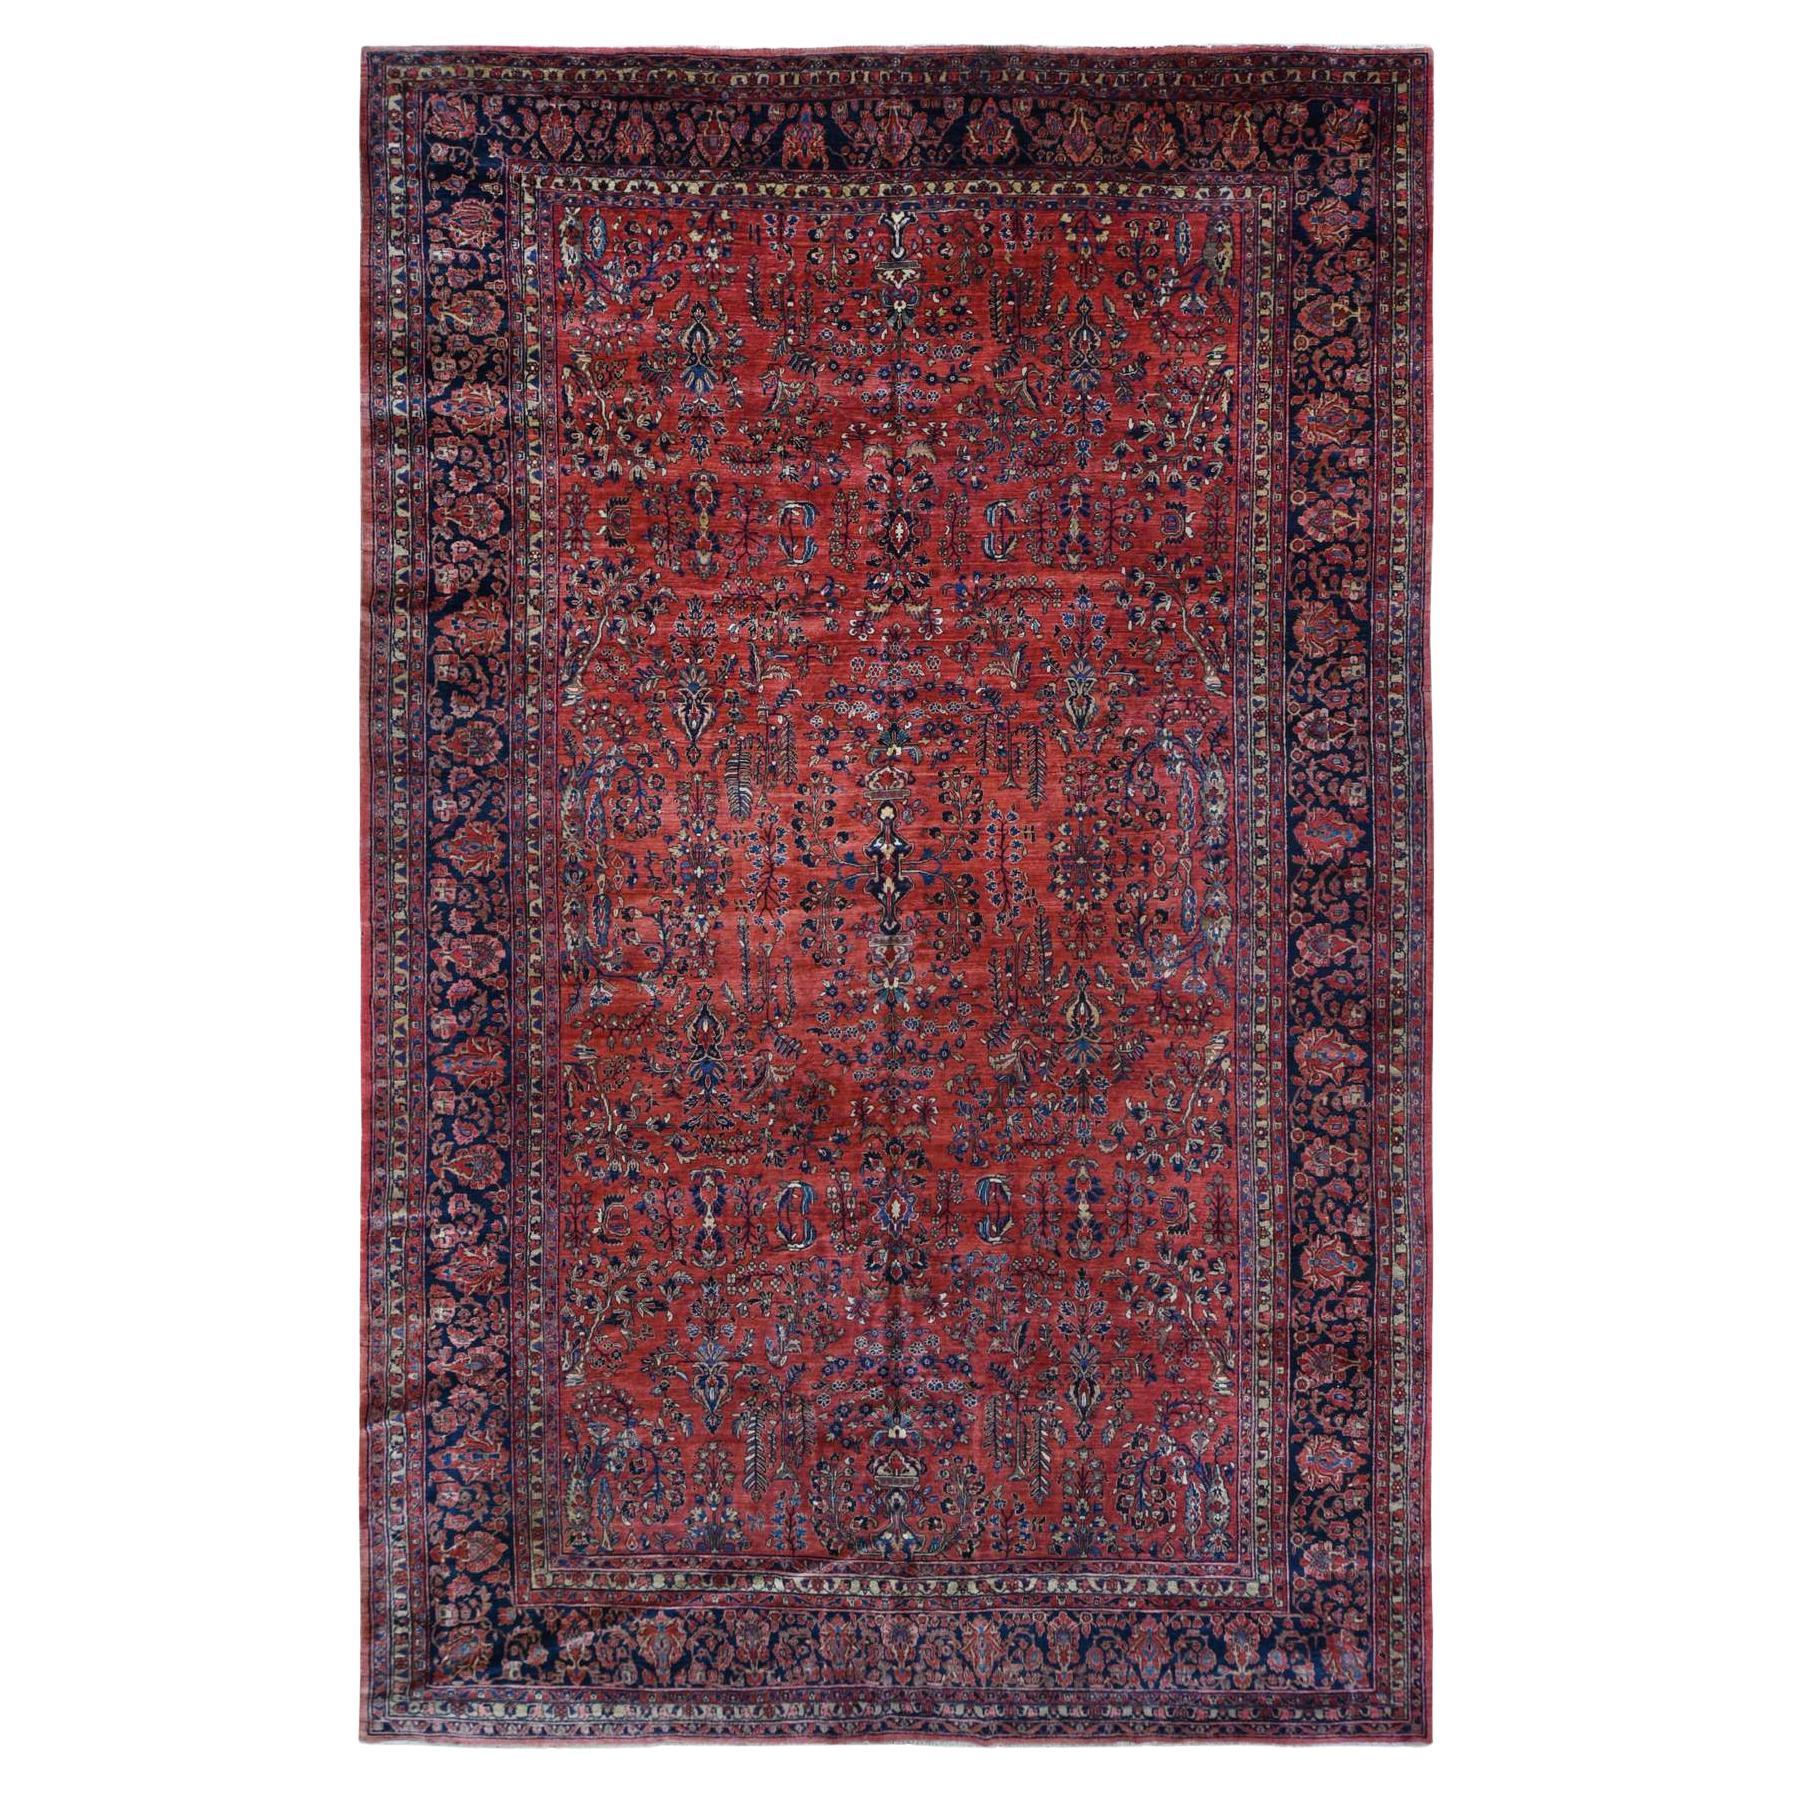 Handgeknüpfter übergroßer antiker persischer Sarouk-Teppich aus reiner Wolle in Rot